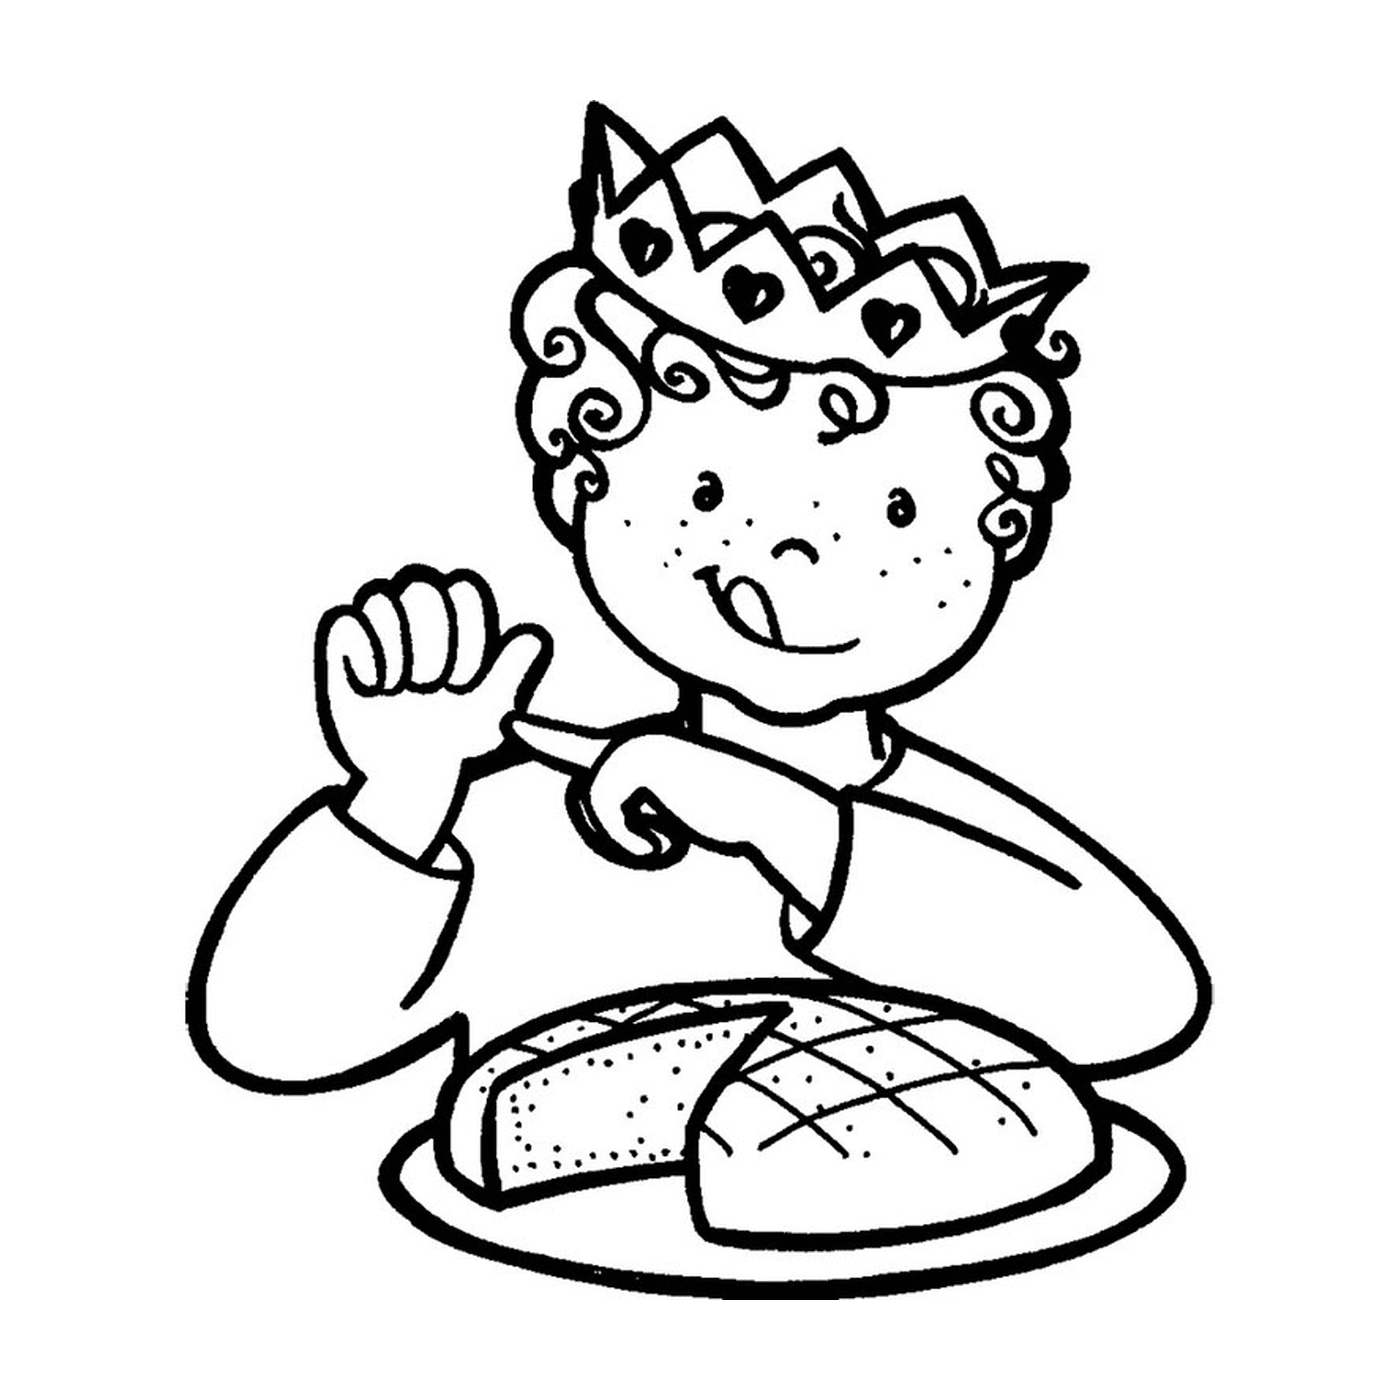  एक बच्चा राजाओं की एक केक के साथ ईल याद करता है 